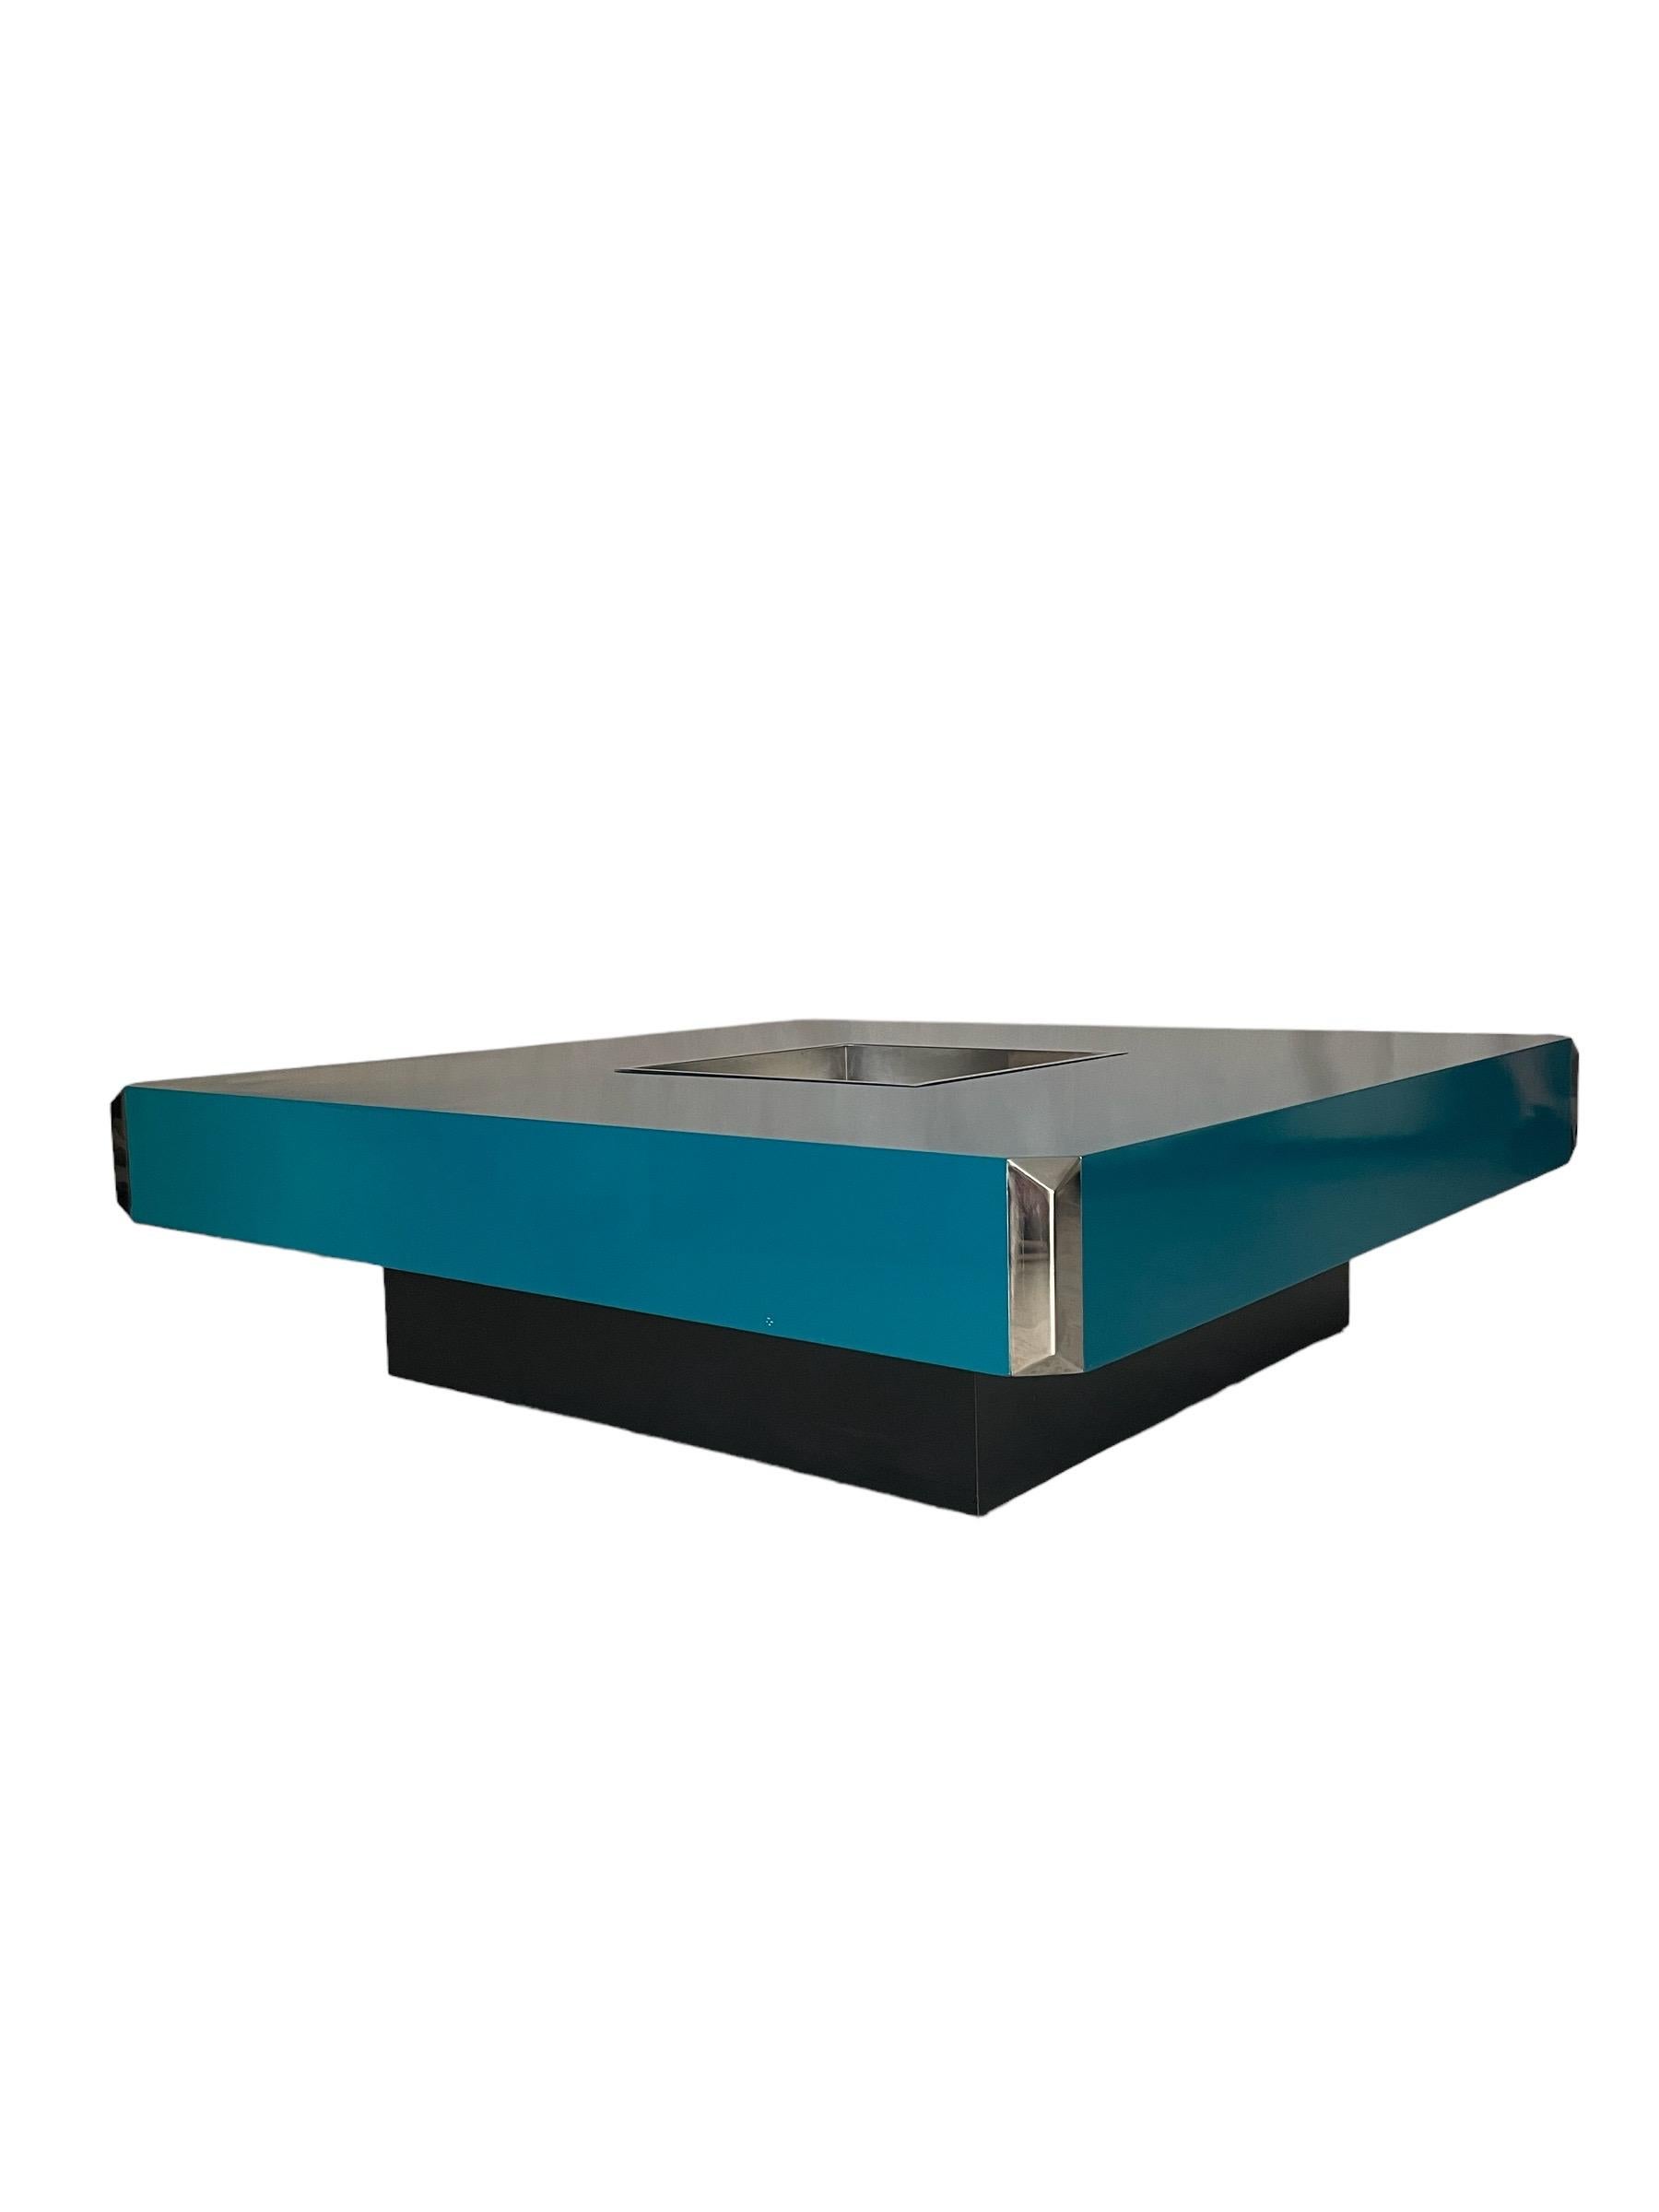 Großer quadratischer Tisch Alveo Model, entworfen von Willy Rizzo und bearbeitet von Mario Sabot. Zentrale Stahlstange und Metallecken, alles original. Die Basis der schwarzen Farbe.
Lackiert in petrolblau. Frankreich 70er Jahre.